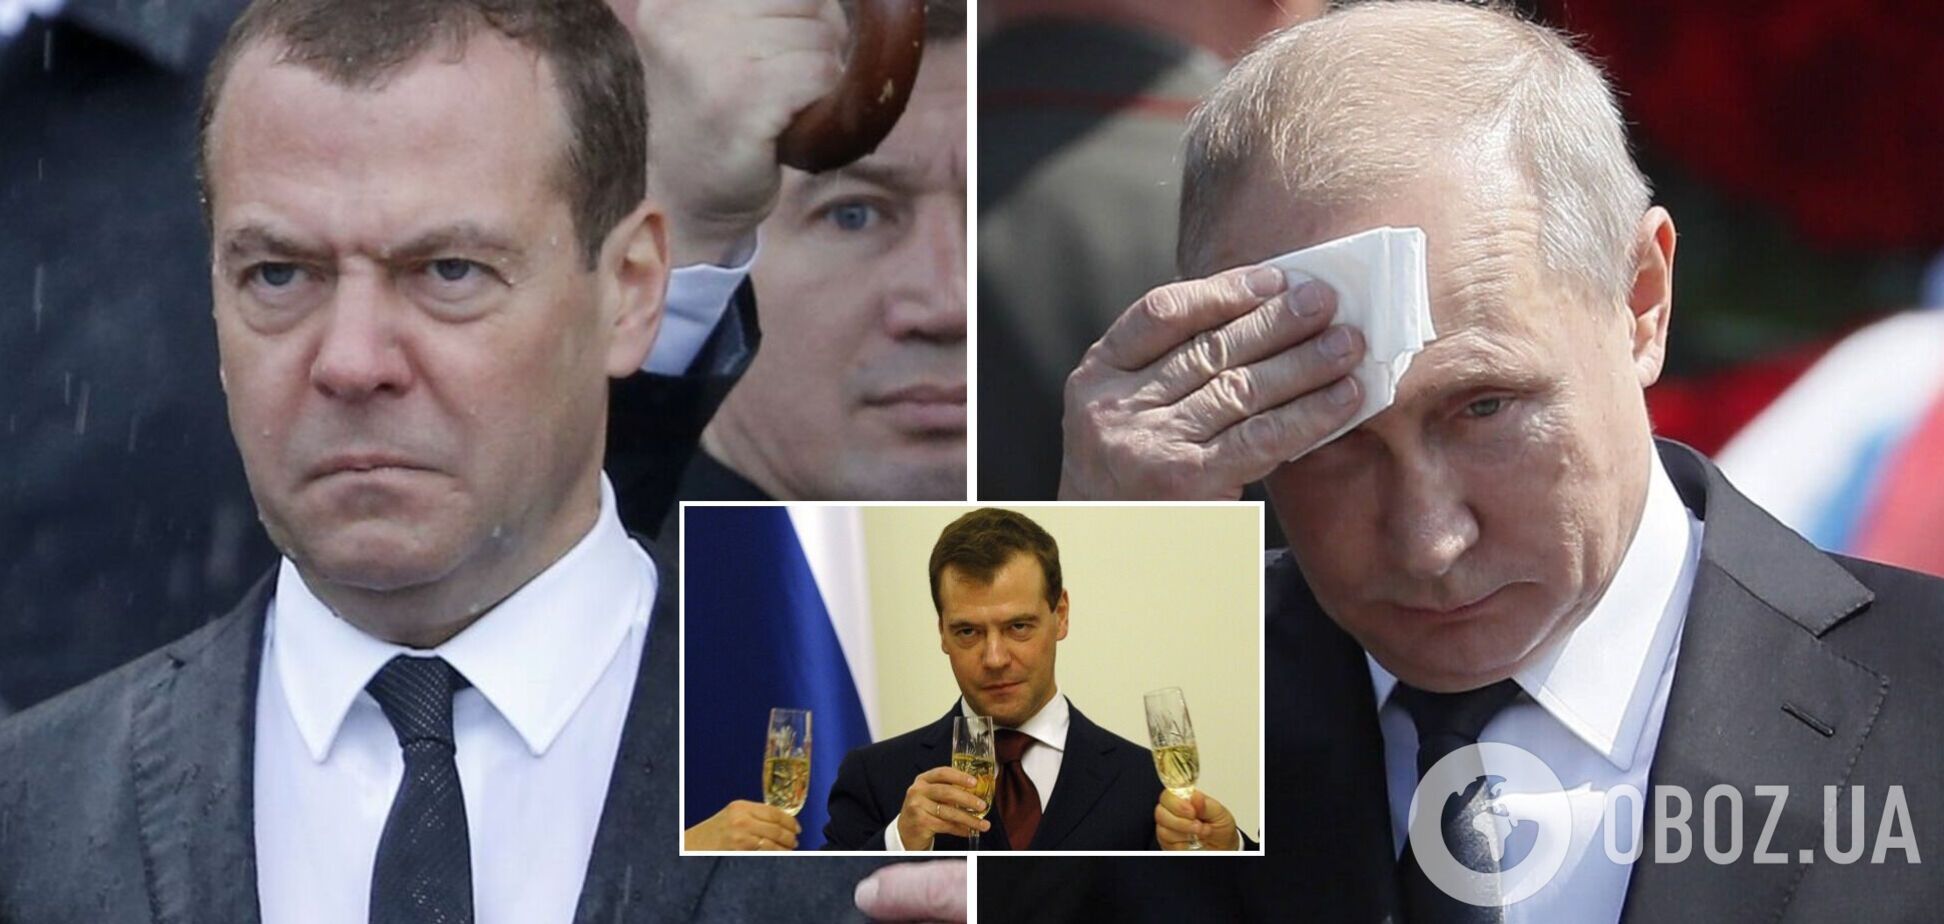 Медведев оскорбил Путина, который назвал его 'главным алкоголиком России': что известно о скандале